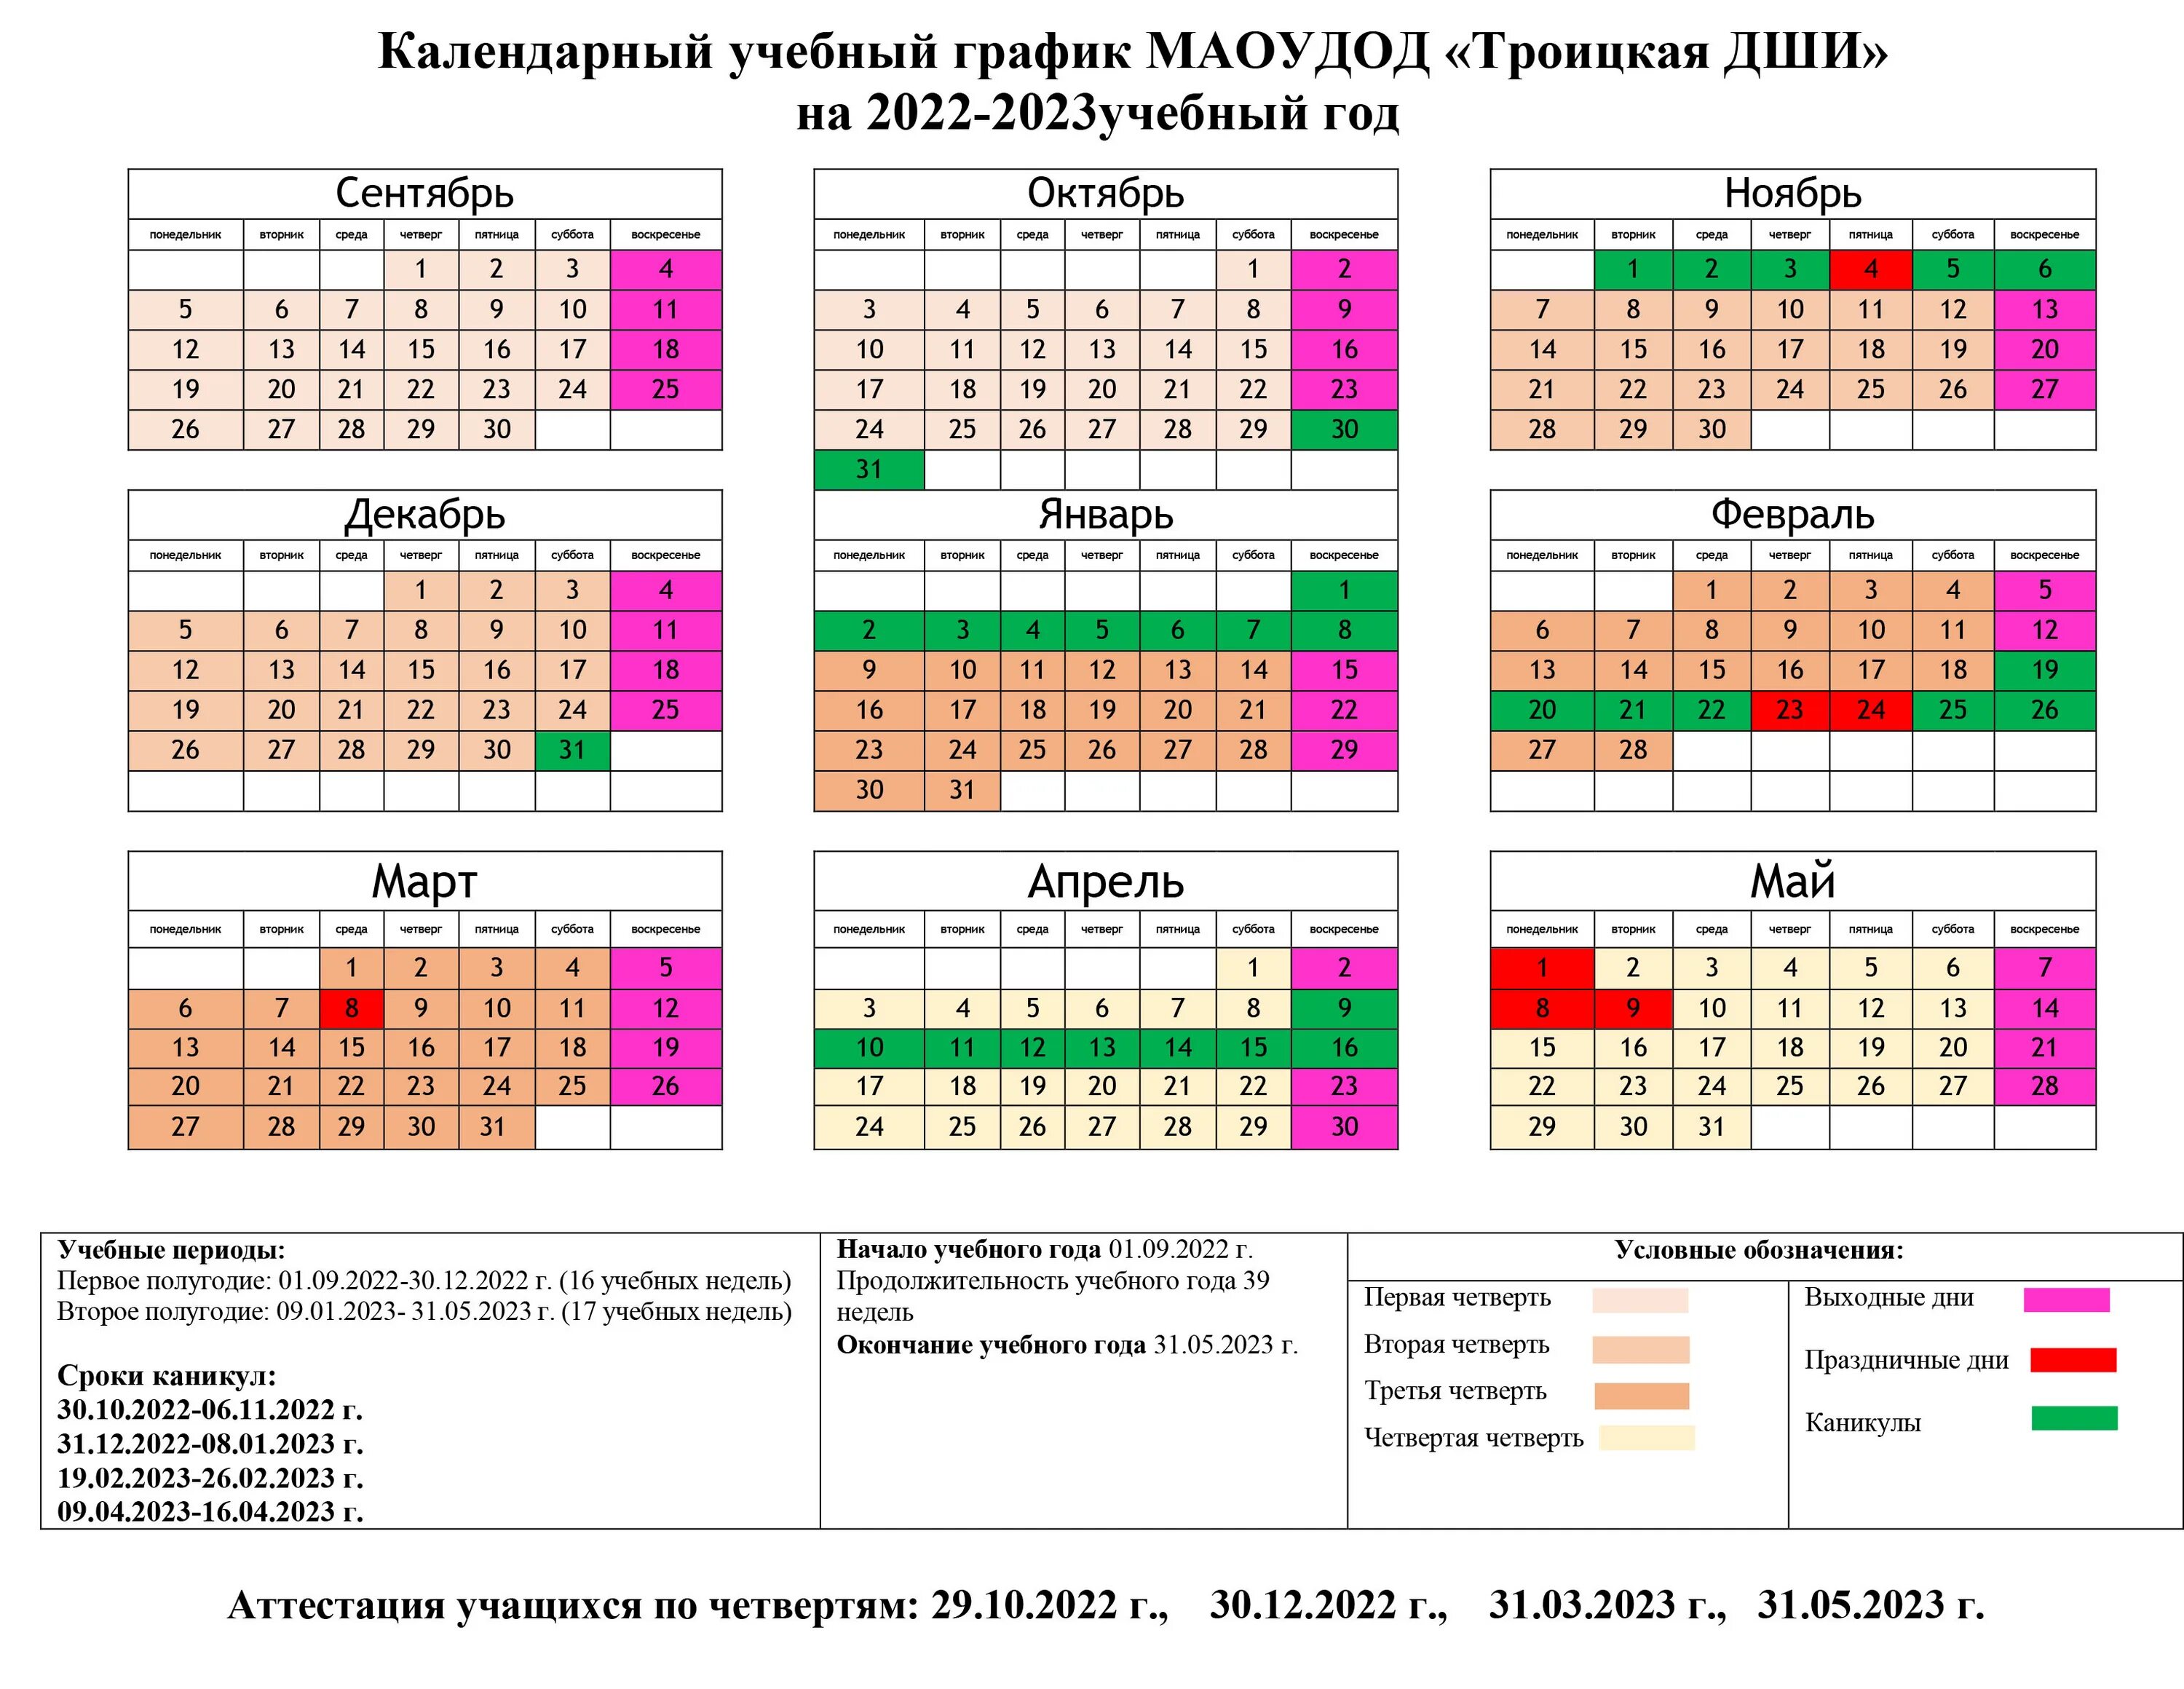 Последний рабочий день в декабре 2023 года. Календарный учебный график на 2022-2023 учебный год в школе Башкортостан. Календарь учебный на 2022-2023 учебный Башкортостан. Календарный учебный график 2022-2023. Годовой календарный учебный график на 2022-2023 учебный год.